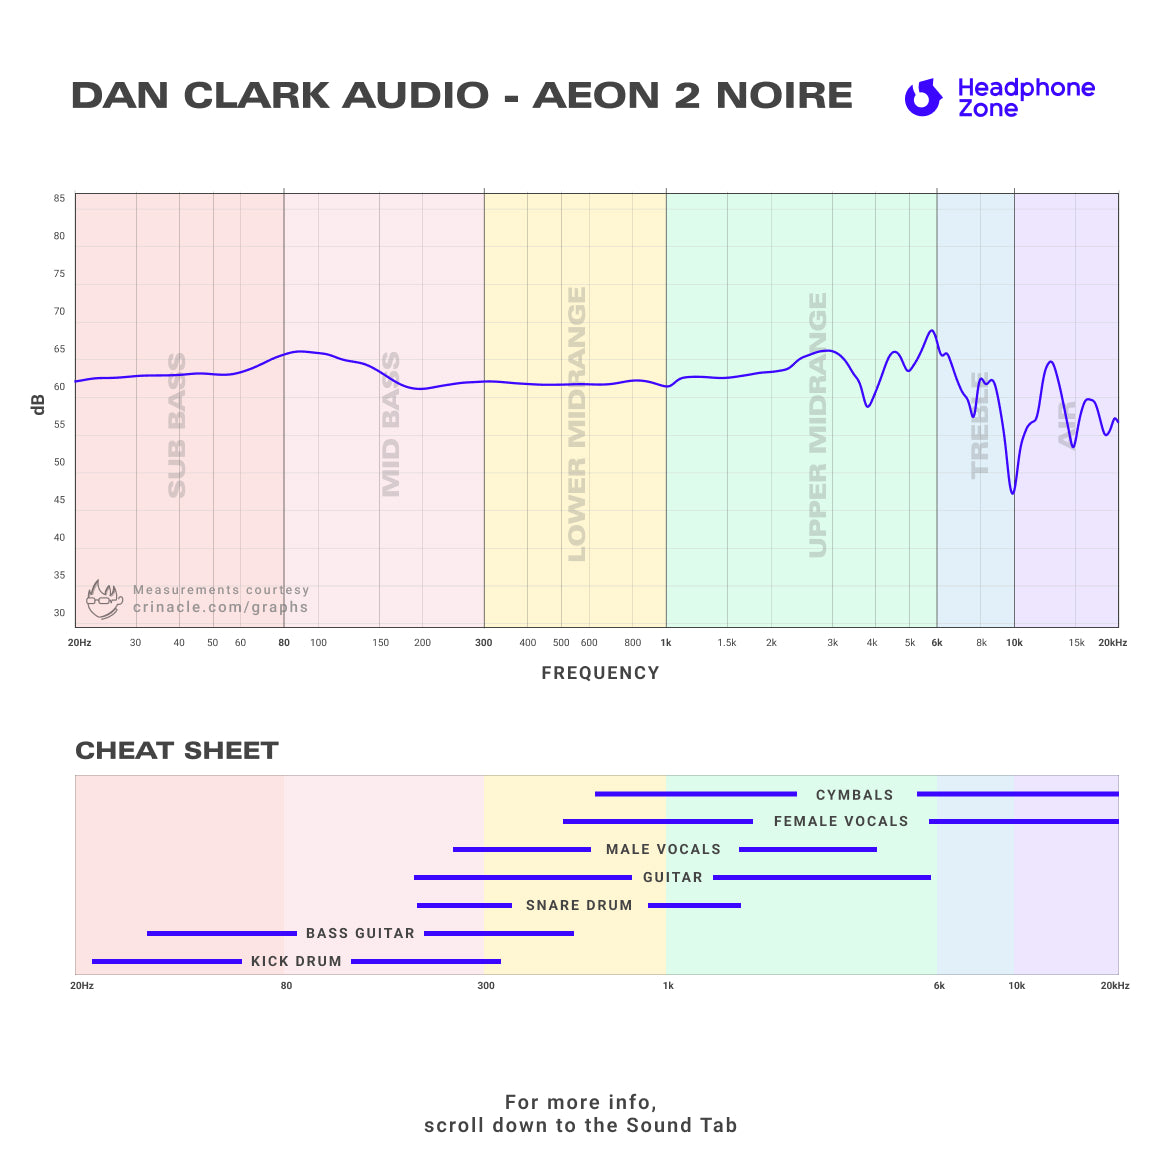 Dan Clark Audio - AEON 2 Noire